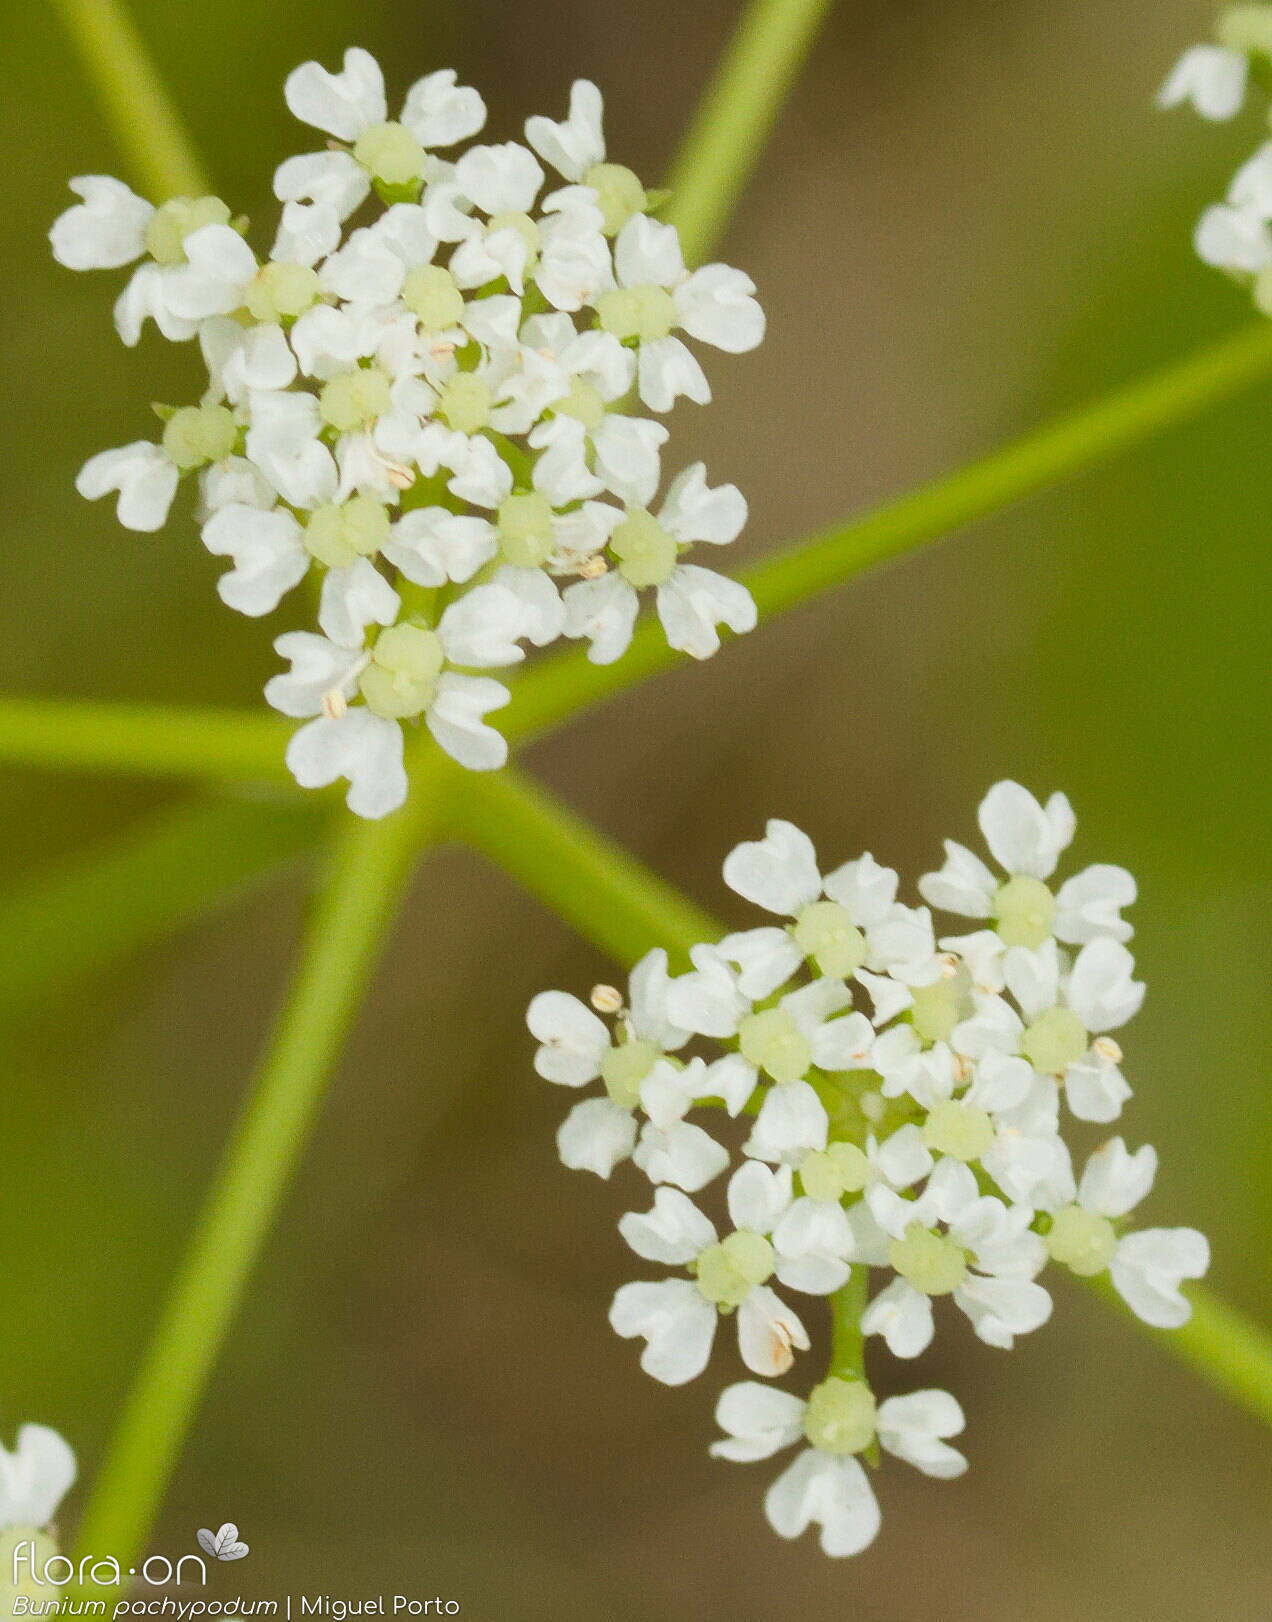 Bunium pachypodum - Flor (close-up) | Miguel Porto; CC BY-NC 4.0